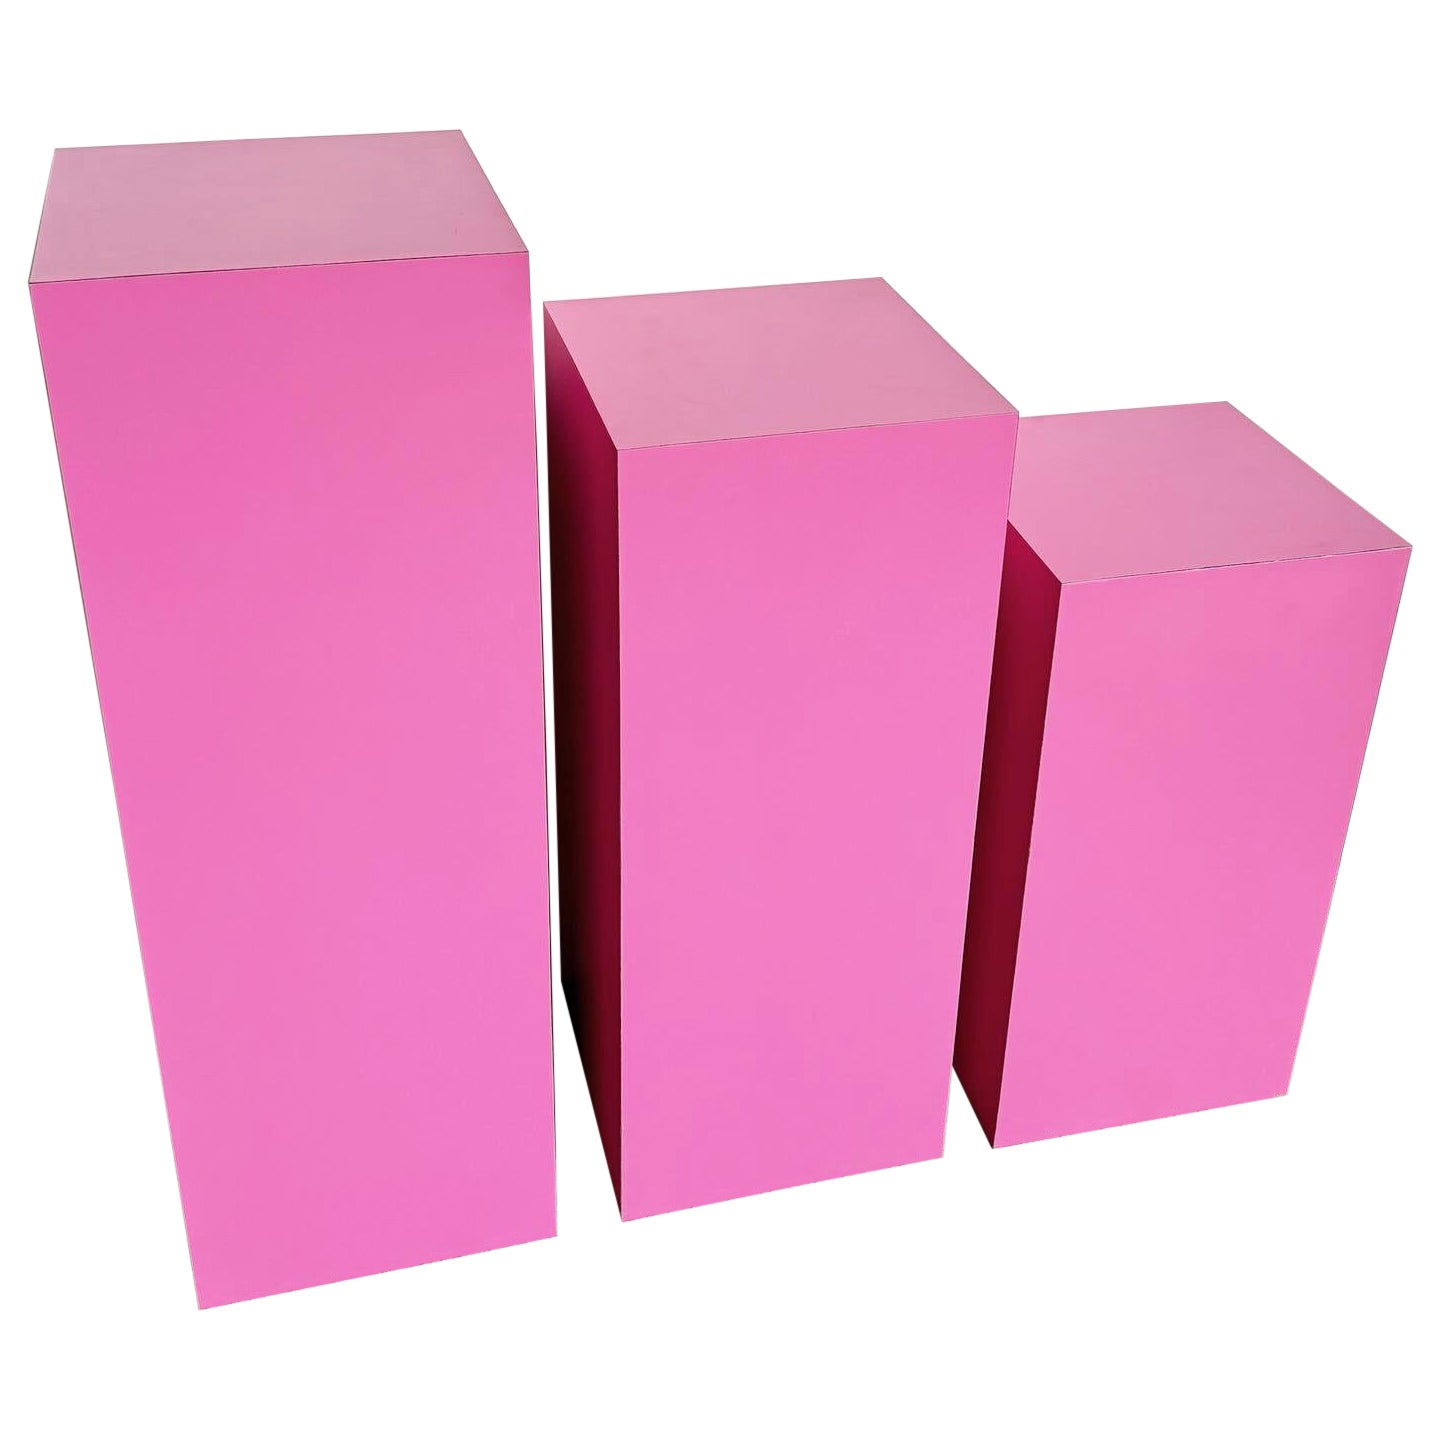 Postmodern Pink Matte Laminate Ascending Rectangular Pedestal Set - Set of 3 For Sale